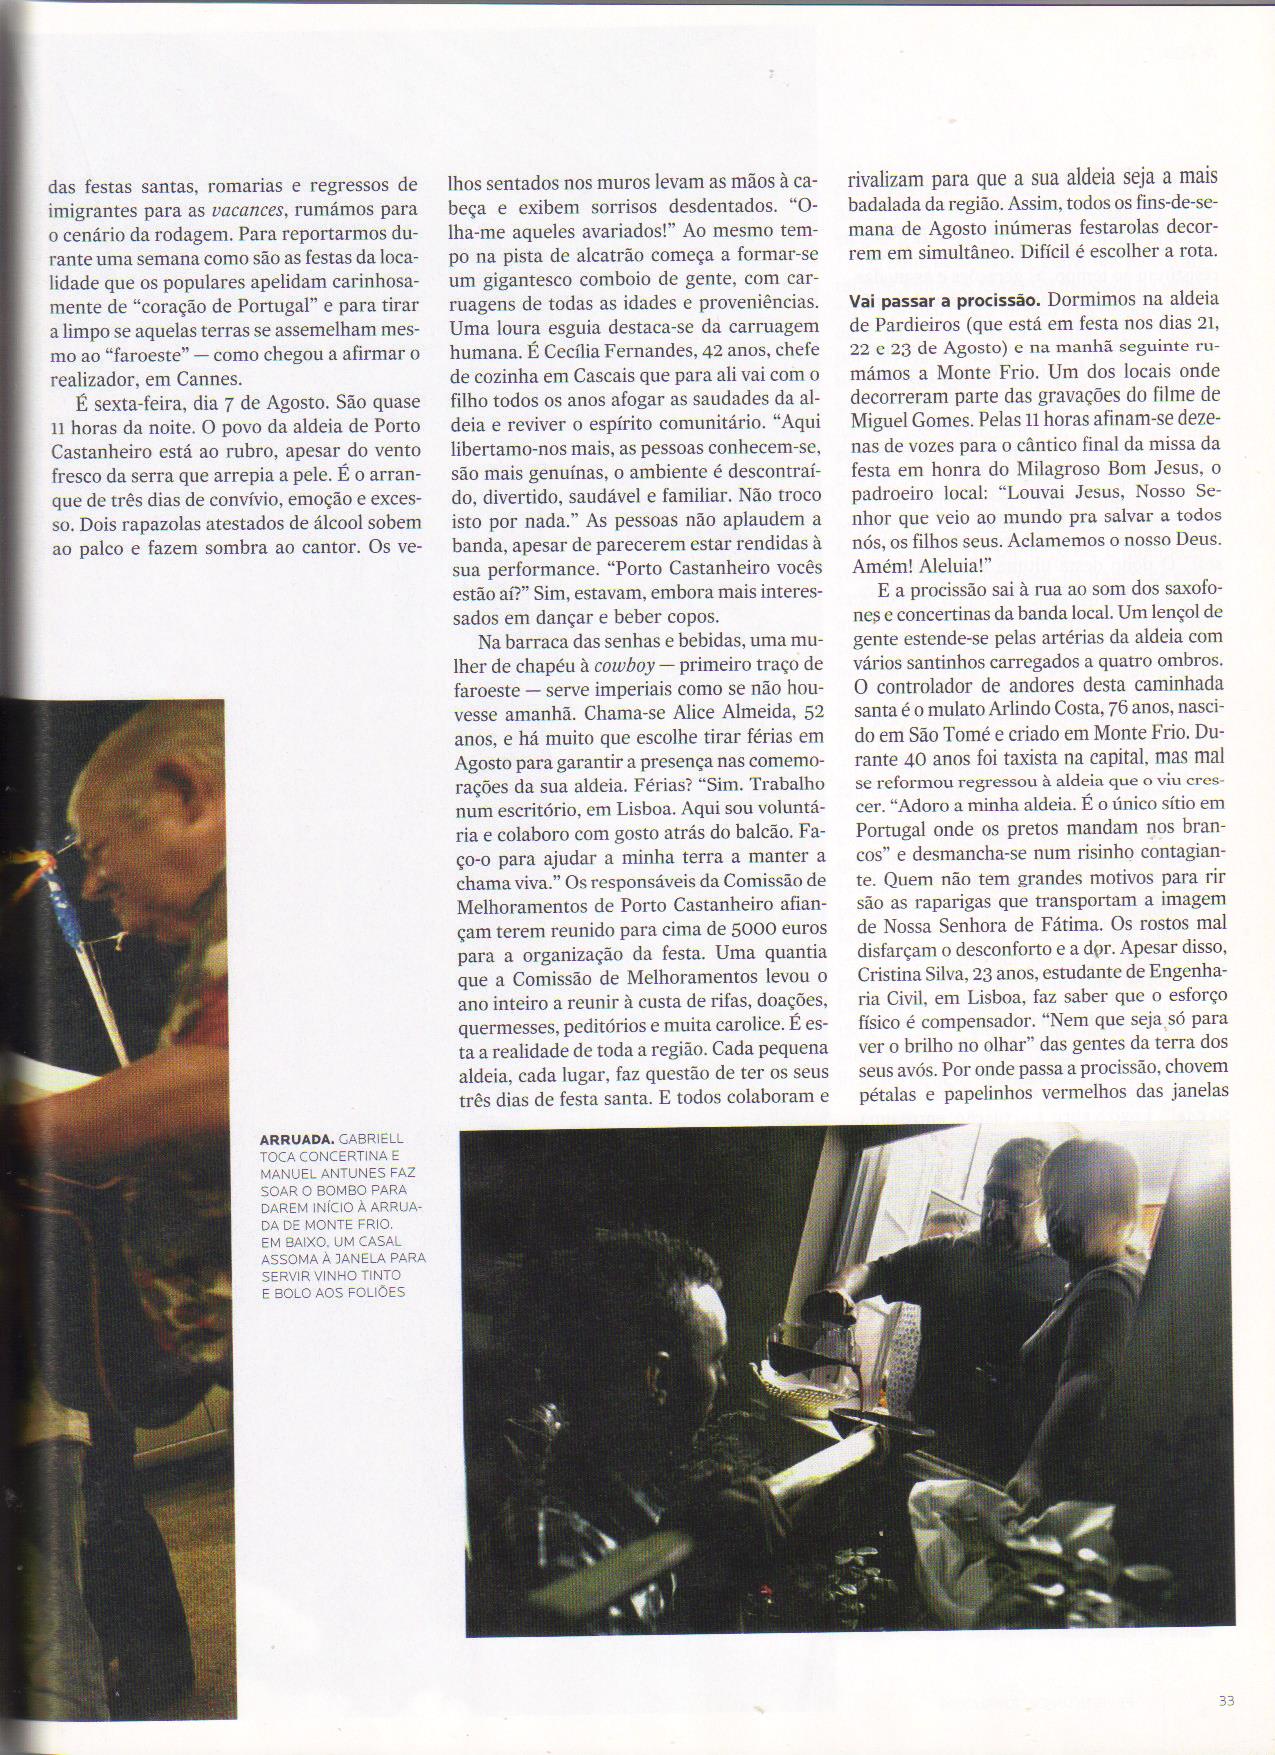 JORNAL EXPRESSO, 22 de Agosto de 2009 - N.º 1.921, Revista Única, pág. 33 - 'FESTA - ALDEIA - As saudades que eu já tinha...'